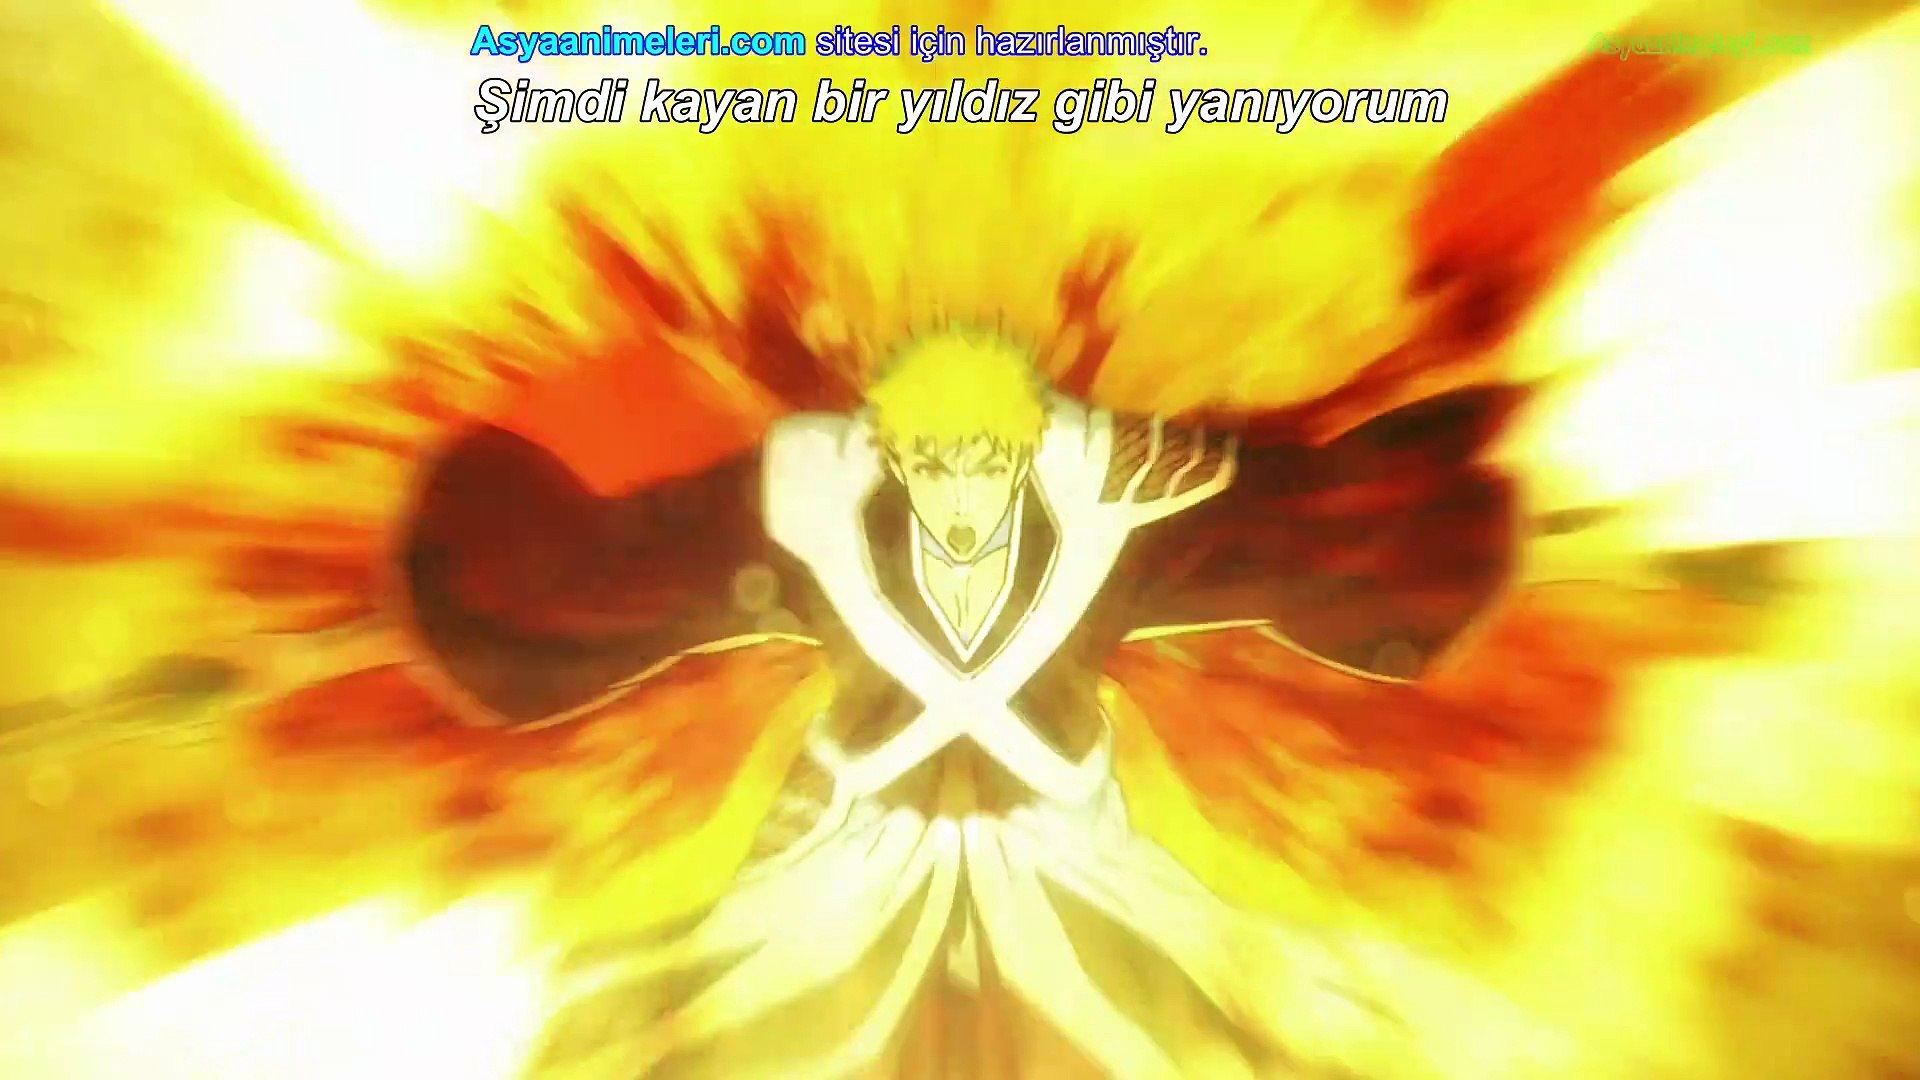 Bleach guerra dos mil anos episode 24 #episode24bleach #animefan #blea